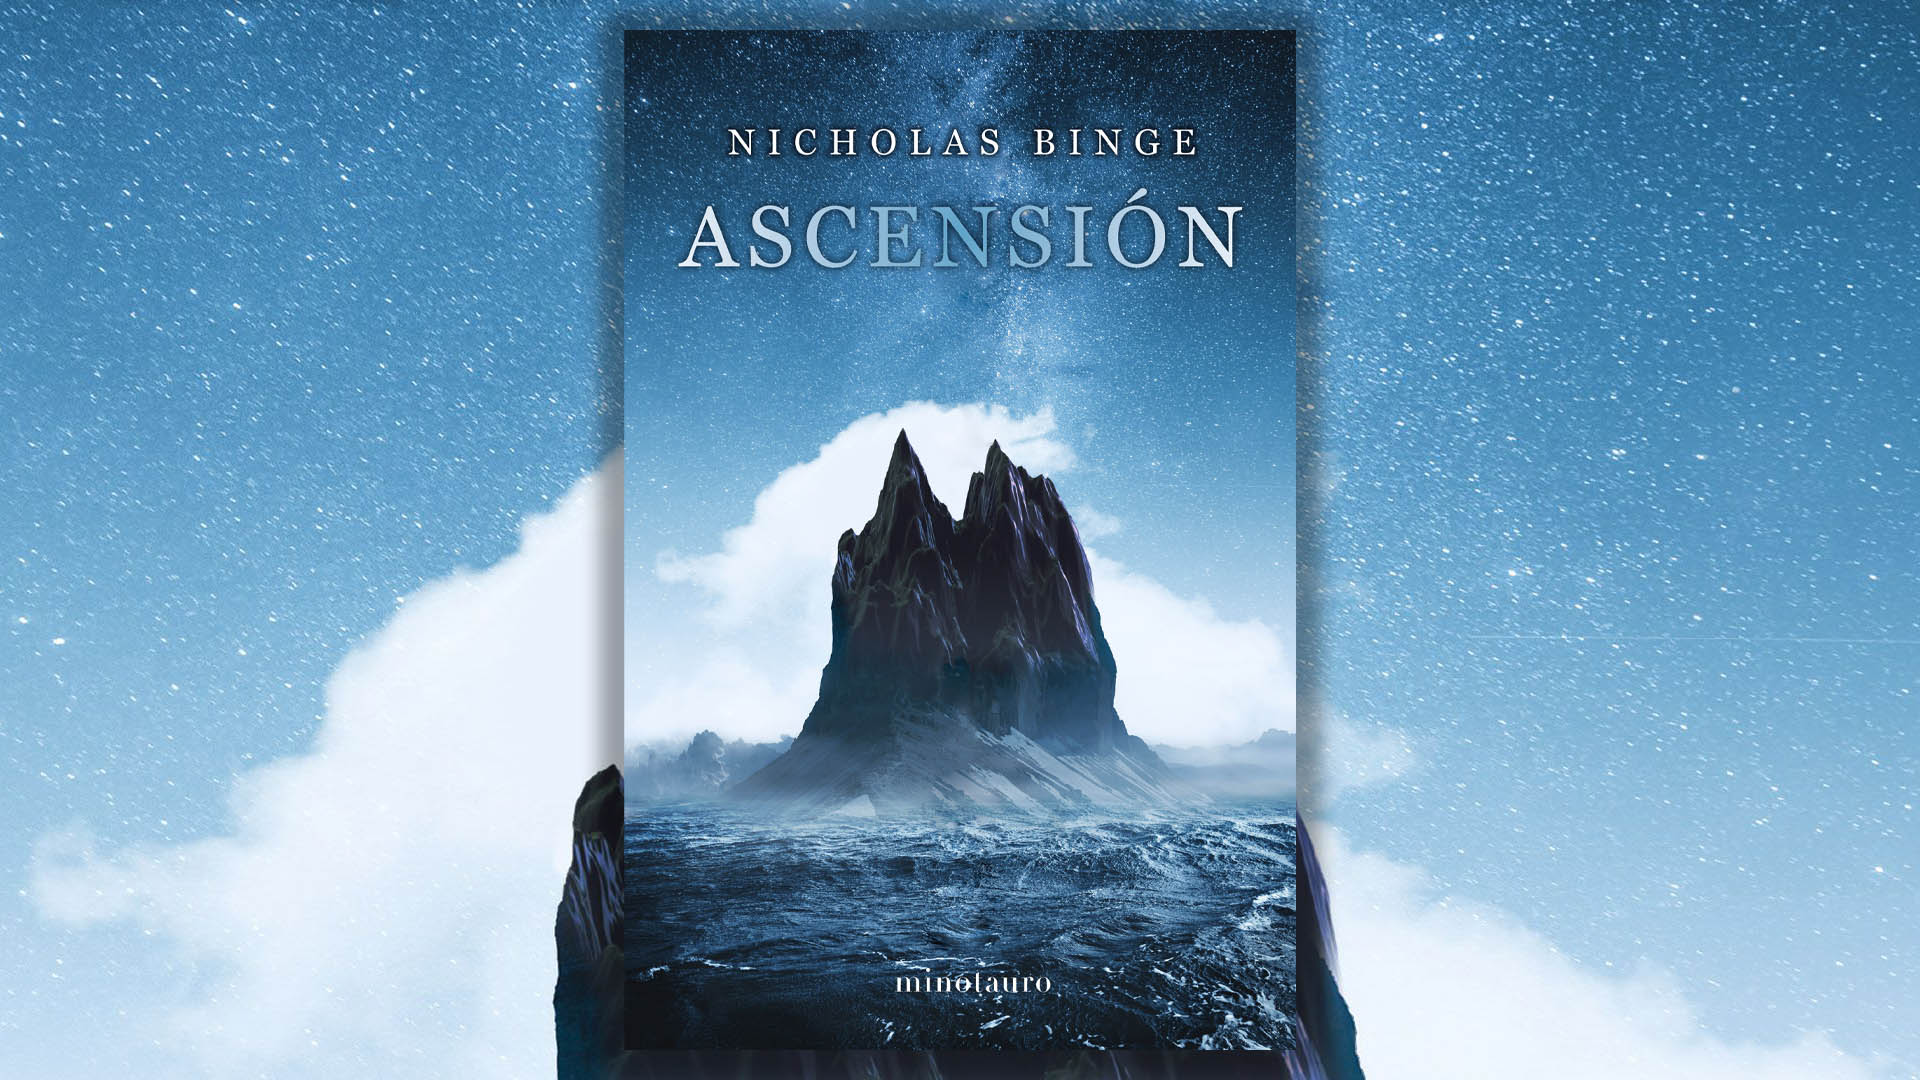 Un thriller de ciencia ficción que lleva al lector tras el misterio de una extraña montaña que aparece de la nada en mitad del océano: “Ascensión”, de Nicholas Binge 